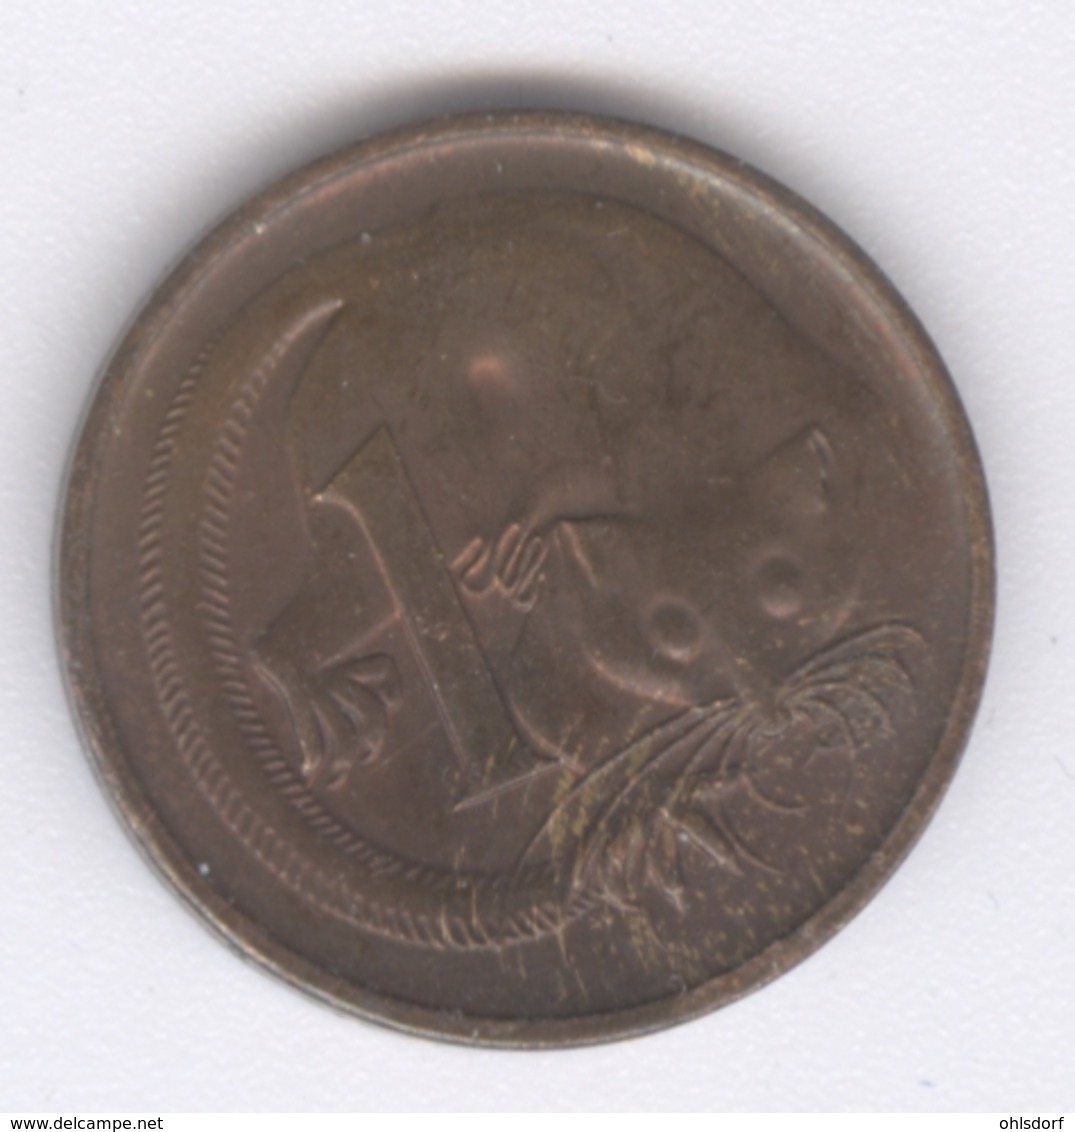 AUSTRALIA 1973: 1 Cent, KM 62 - Cent